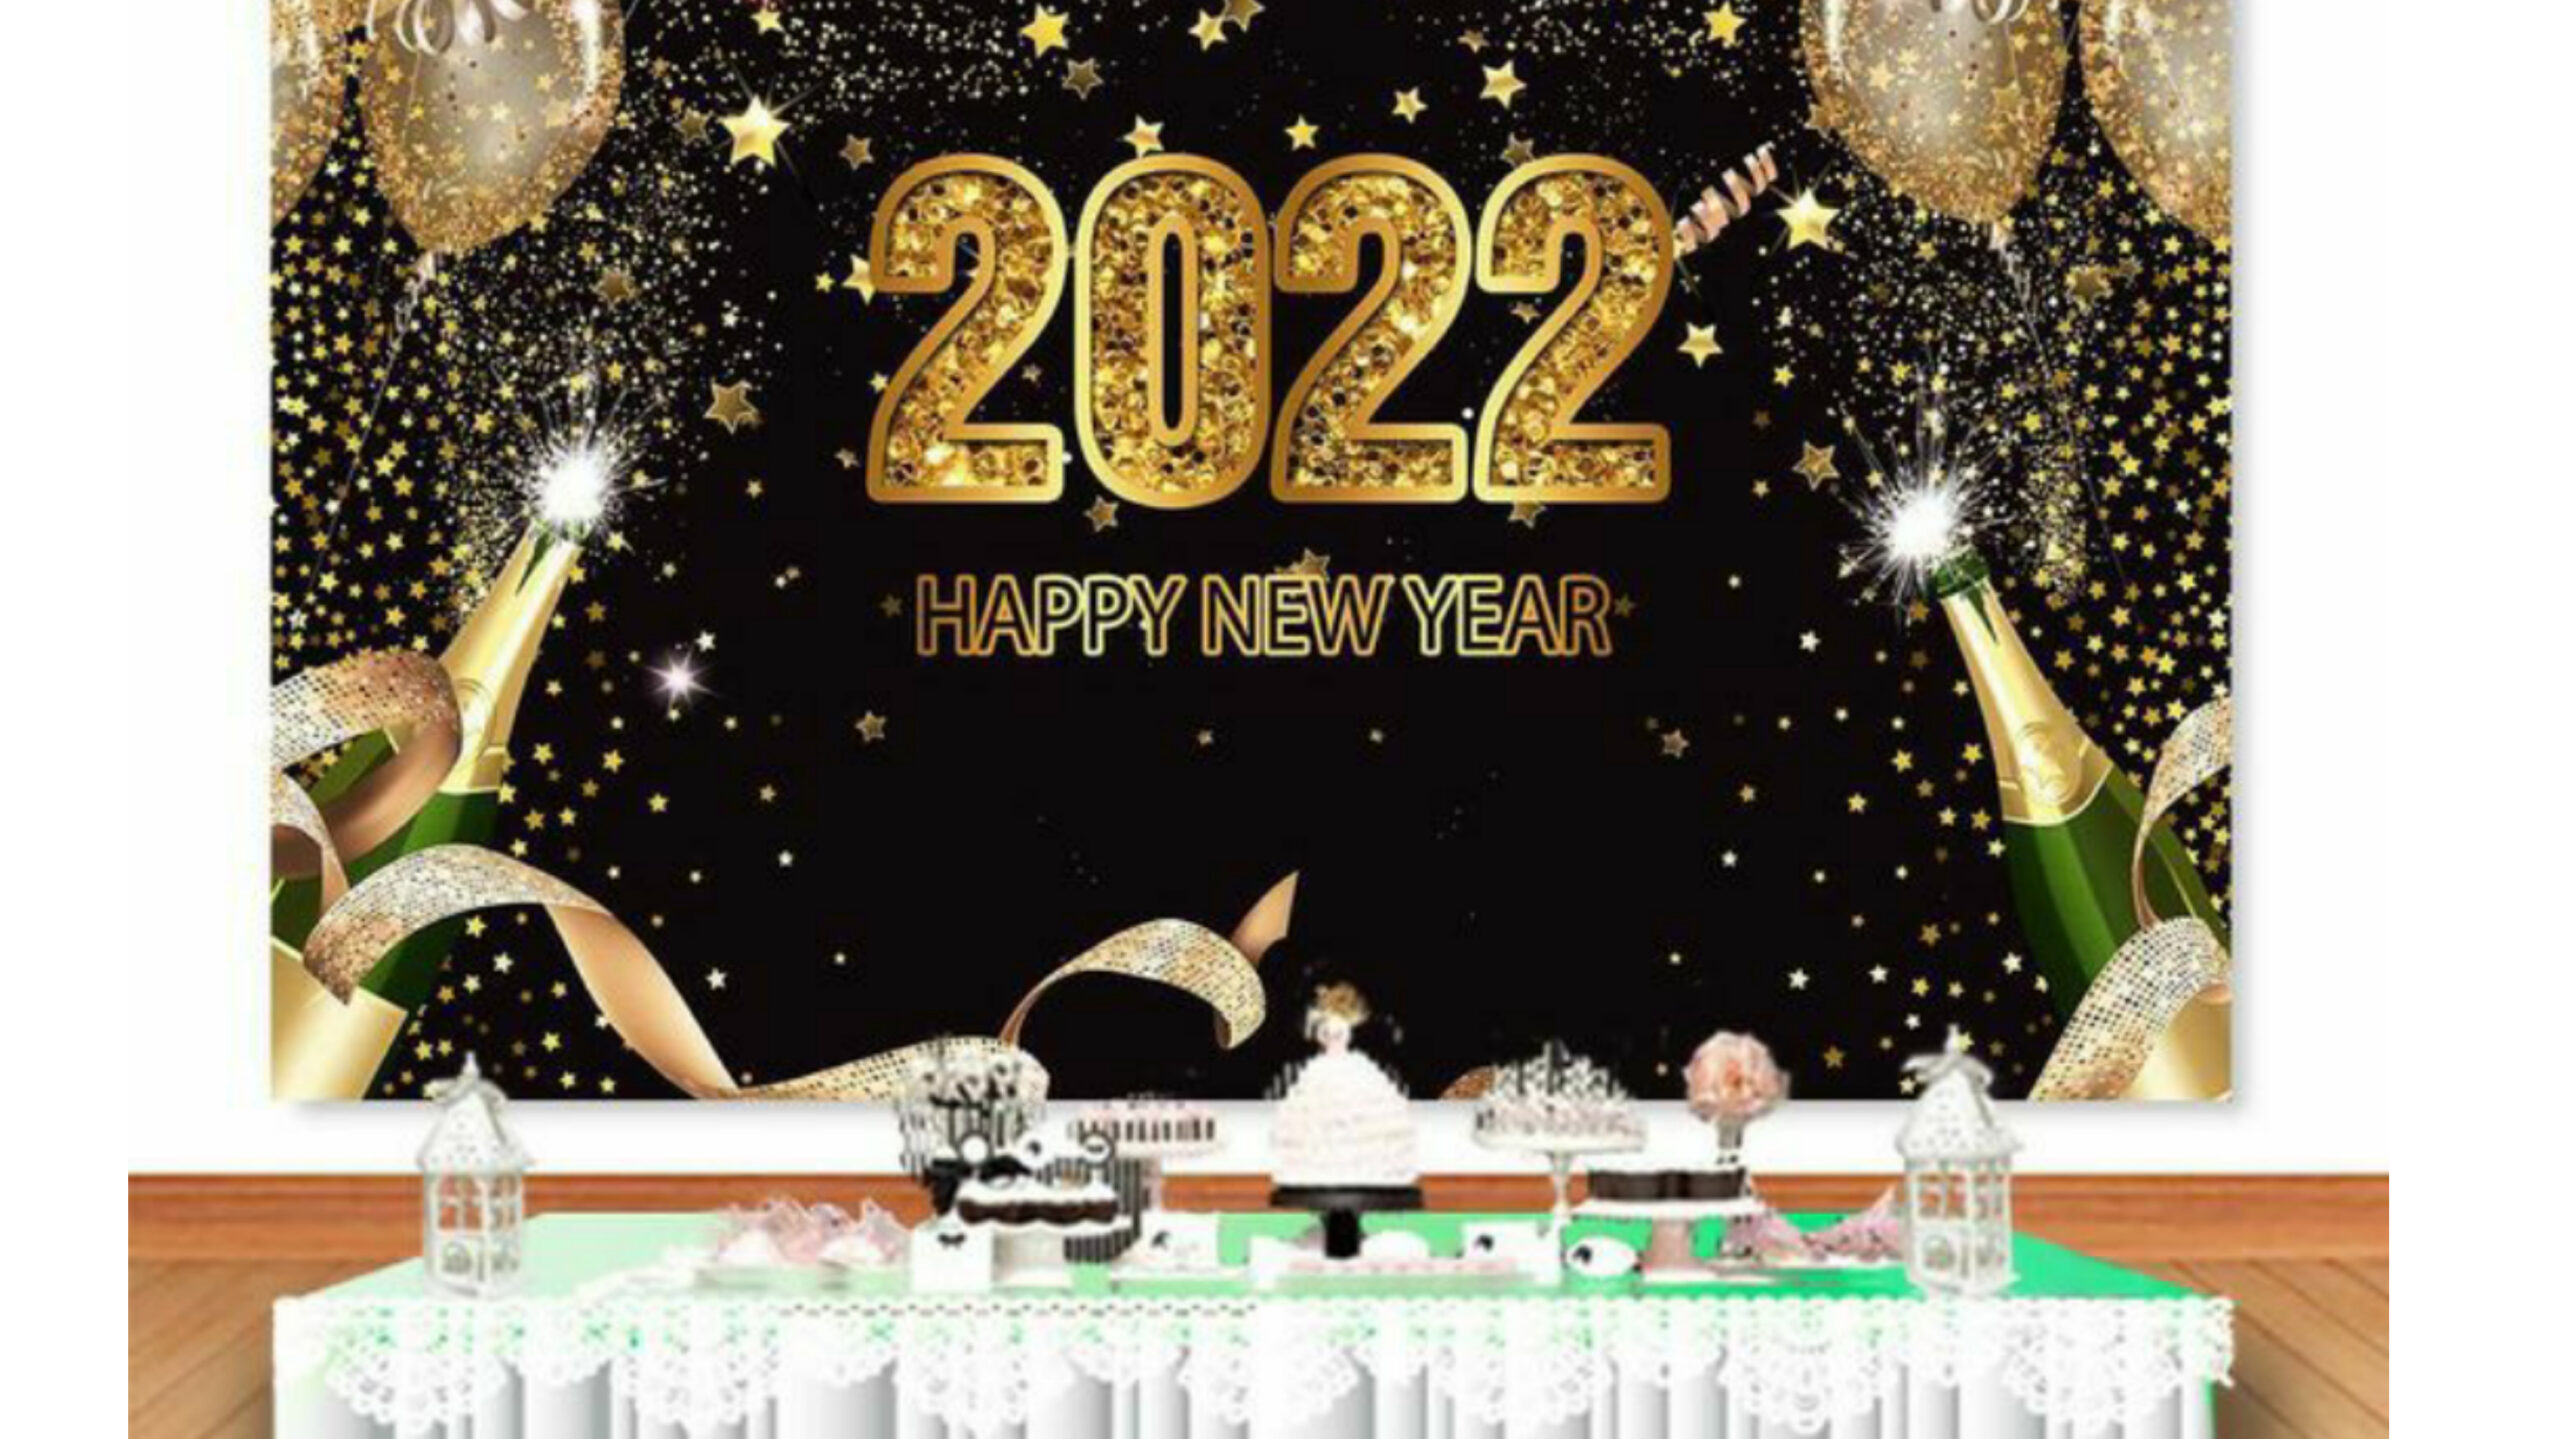 اجمل الصور السنة الجديدة 2022 , تهاني راس السنة 2022